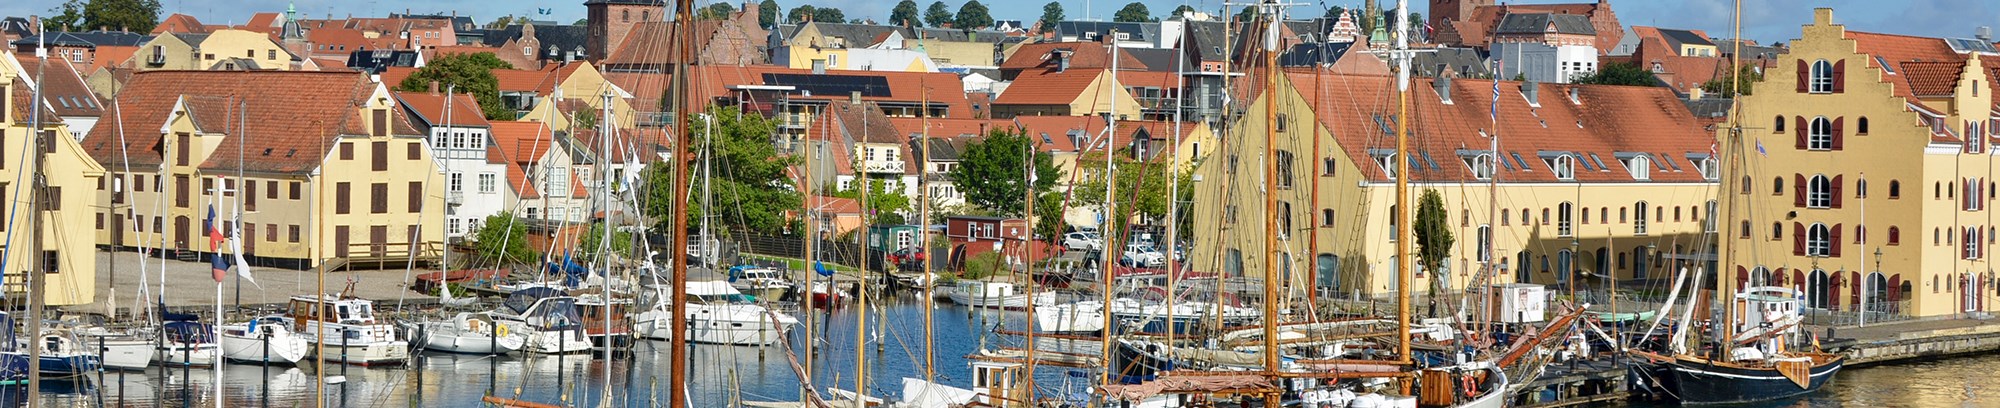 Interesseliste ”Mad & mennesker” i Søfartsbyen Svendborg